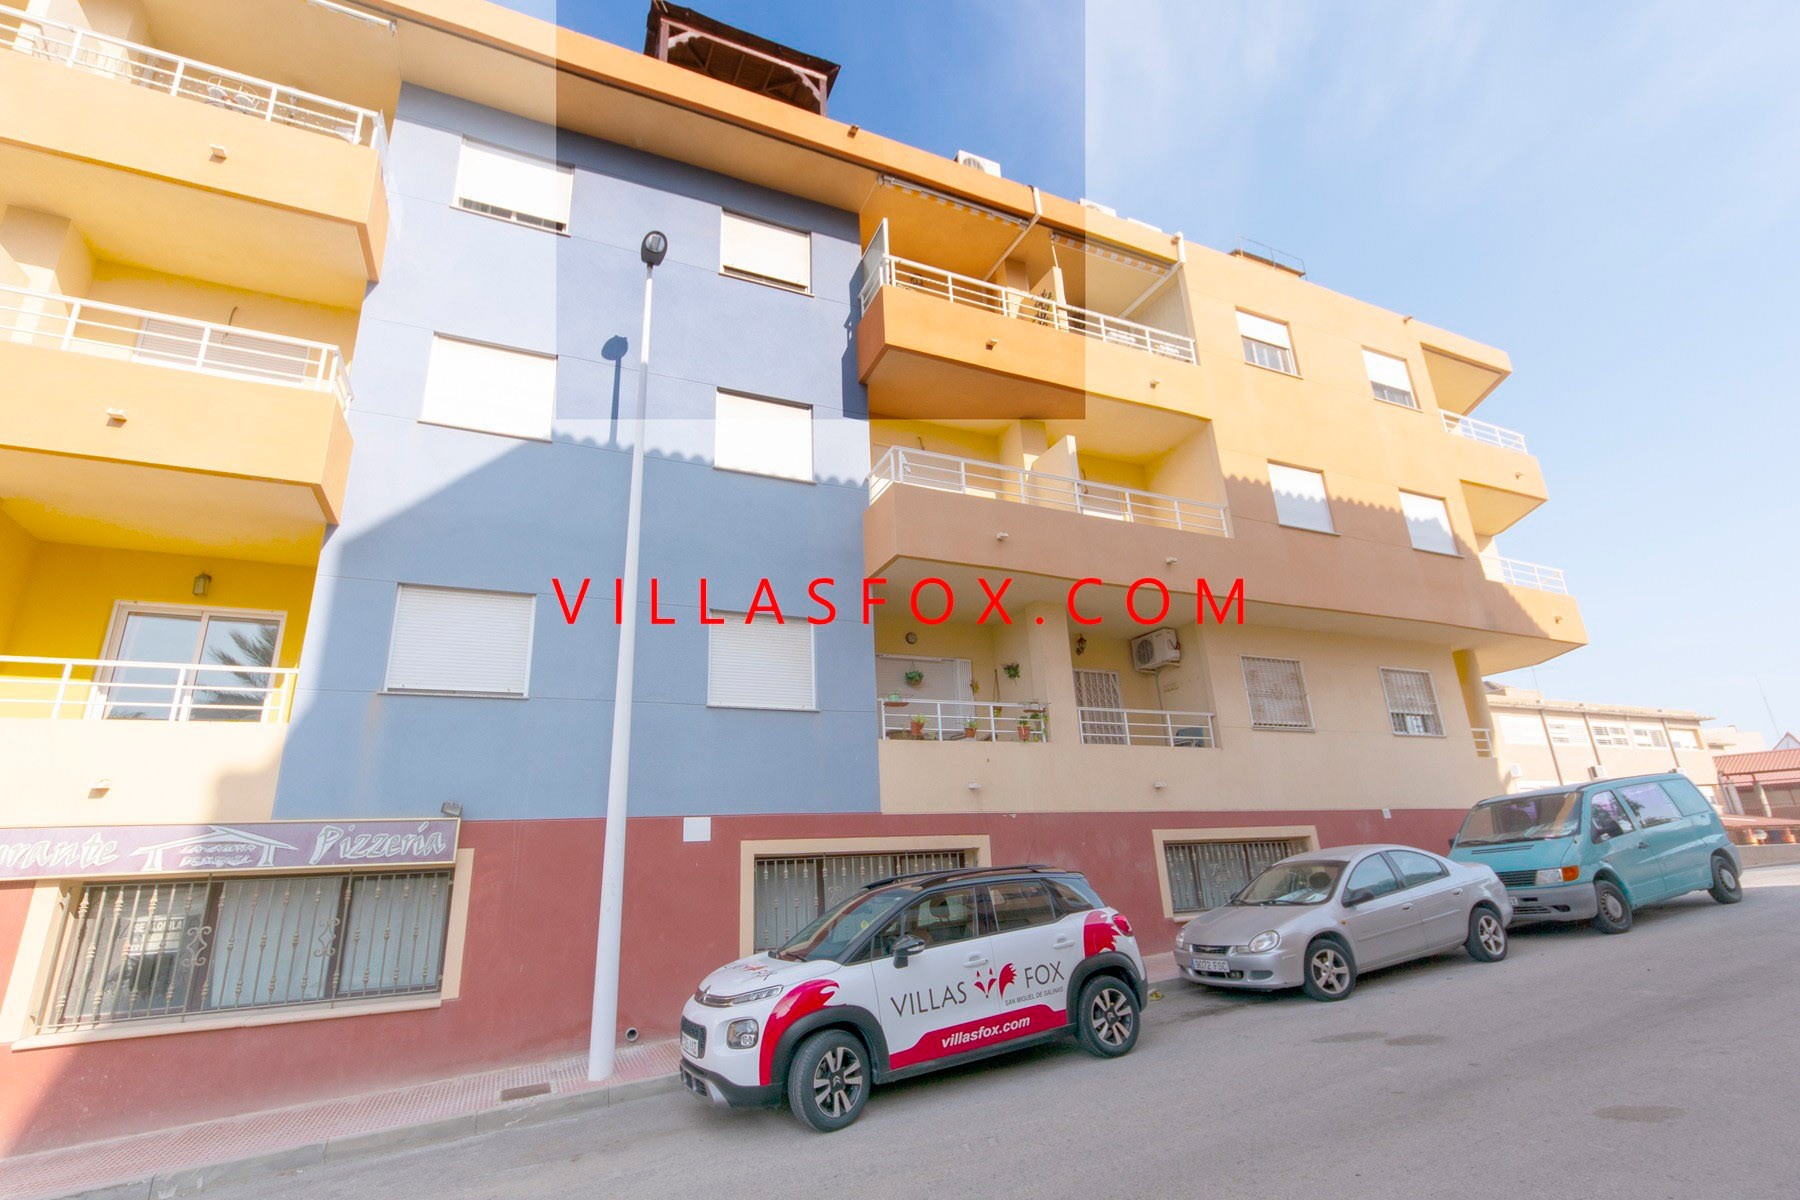 1 San Miguel de Salinas Appartamento in Centro città di Villas Fox migliori agenti immobiliari 611039449965e